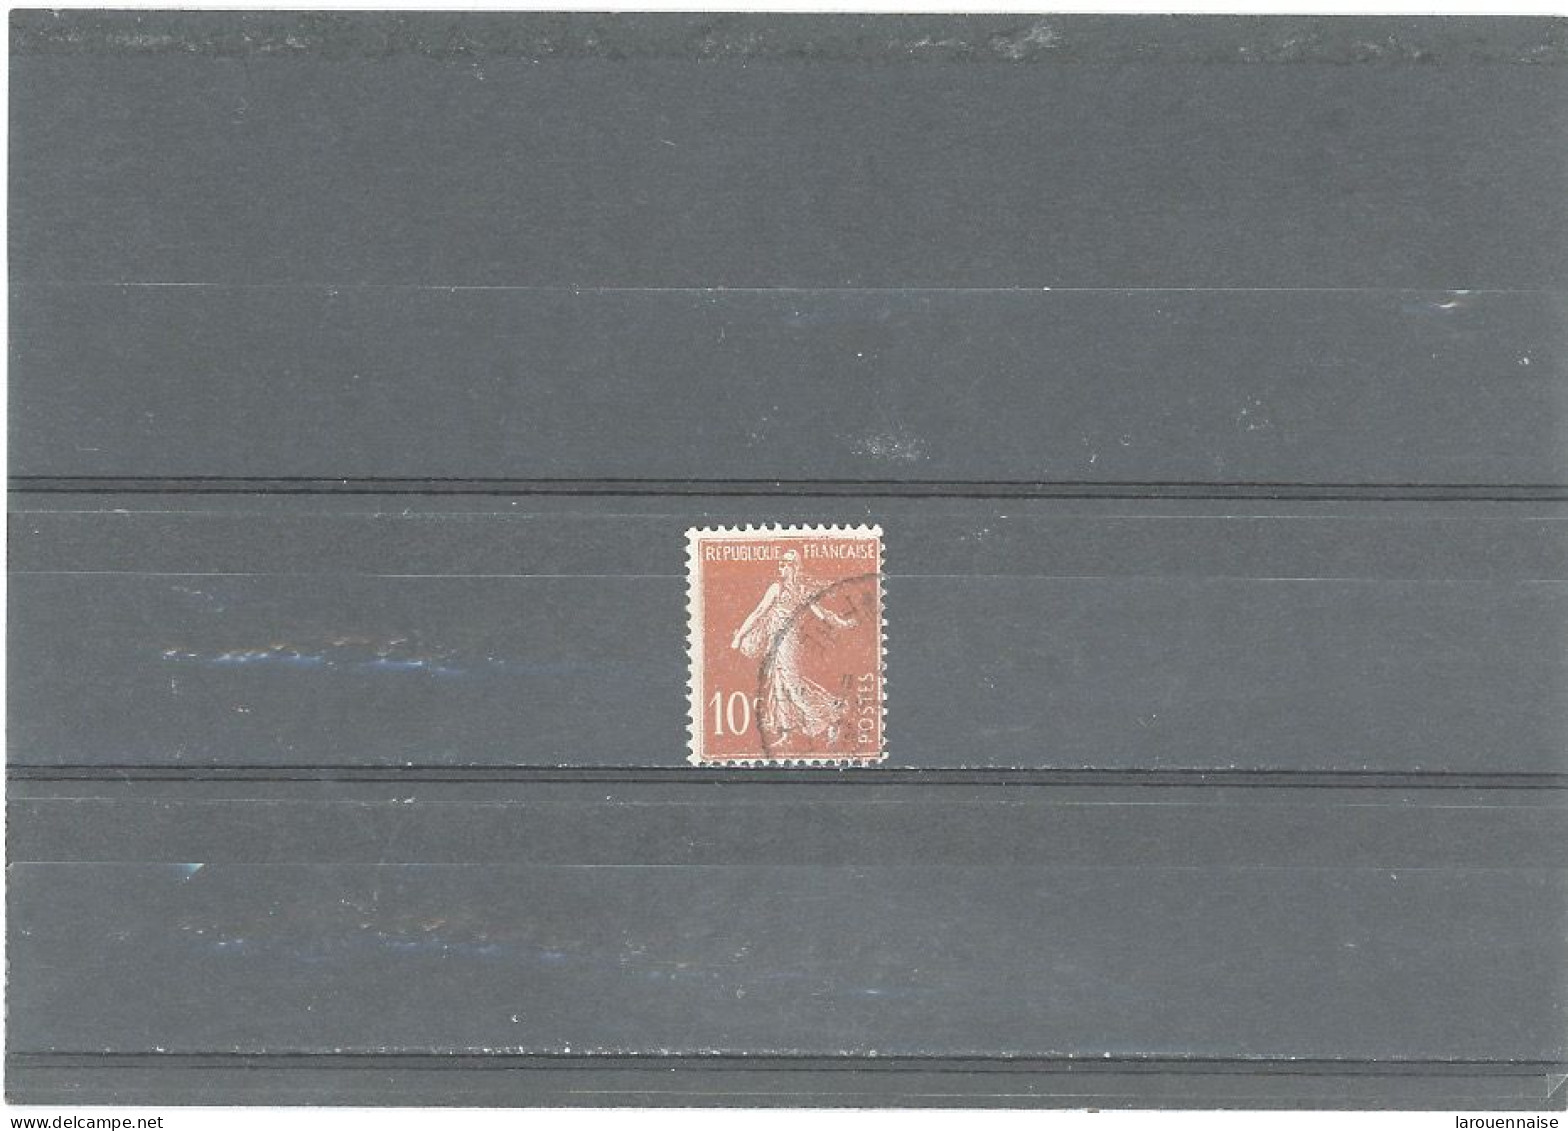 VARIÉTÉS -N°135 -Obl SEMEUSE CAMÉE -10c ROUGE -CHIFFRE MAIGRE -LETTRES DE RF DEFECTUEUSES -CADRE DU HAUT CASSÉ - Used Stamps